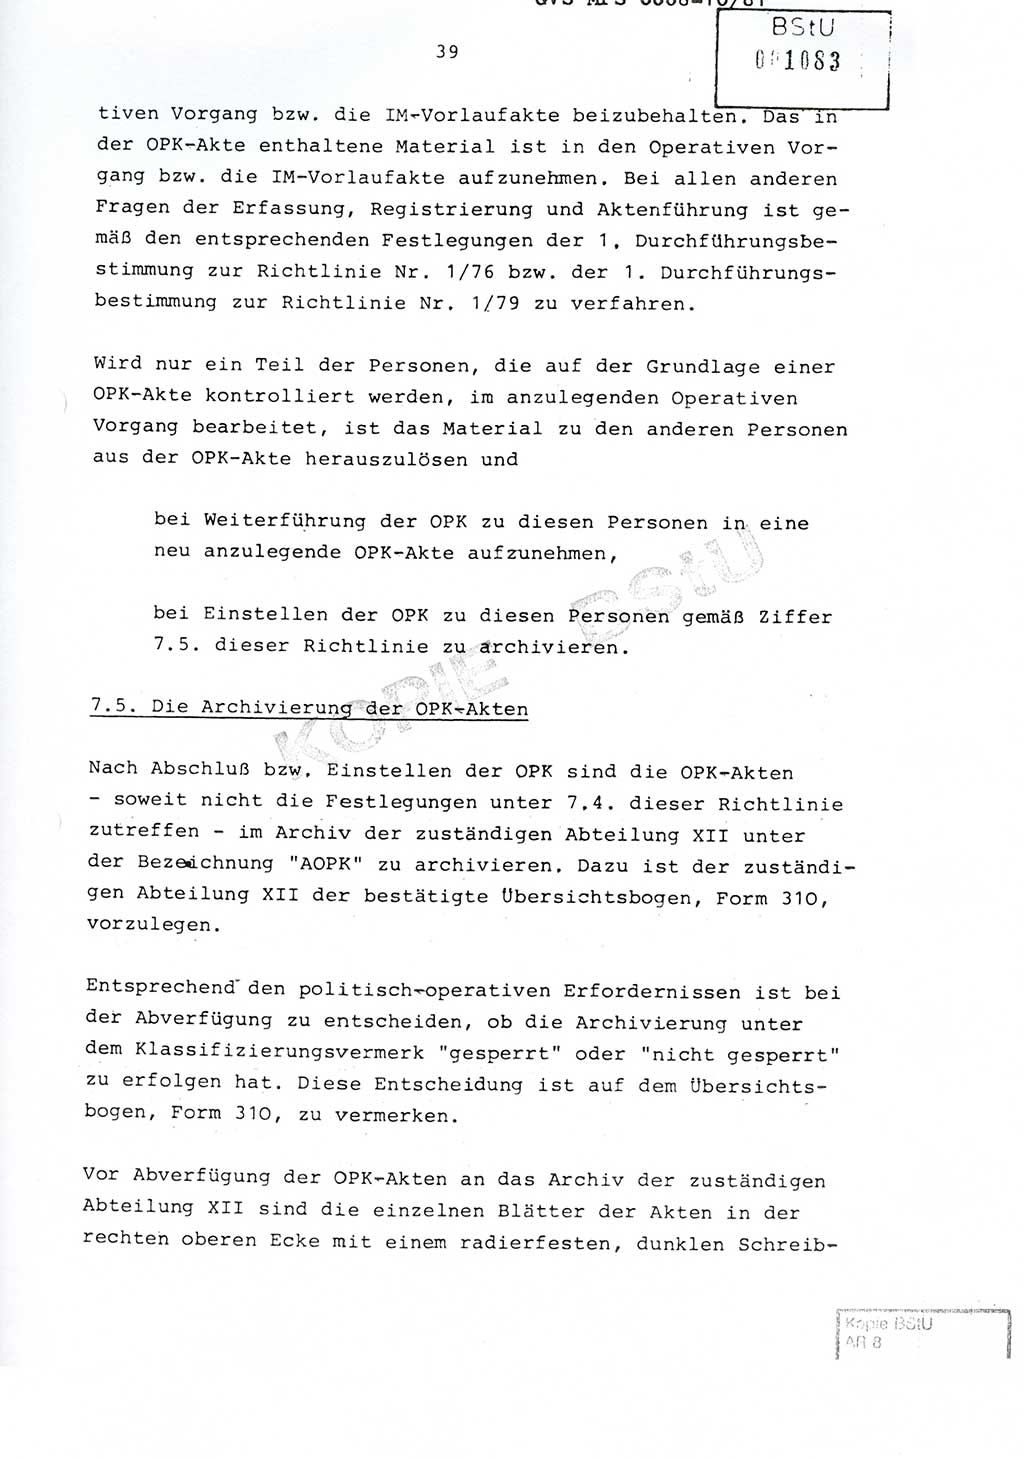 Richtlinie Nr. 1/81 über die operative Personenkontrolle (OPK), Ministerium für Staatssicherheit (MfS) [Deutsche Demokratische Republik (DDR)], Der Minister, Geheime Verschlußsache (GVS) ooo8-10/81, Berlin 1981, Blatt 39 (RL 1/81 OPK DDR MfS Min. GVS ooo8-10/81 1981, Bl. 39)